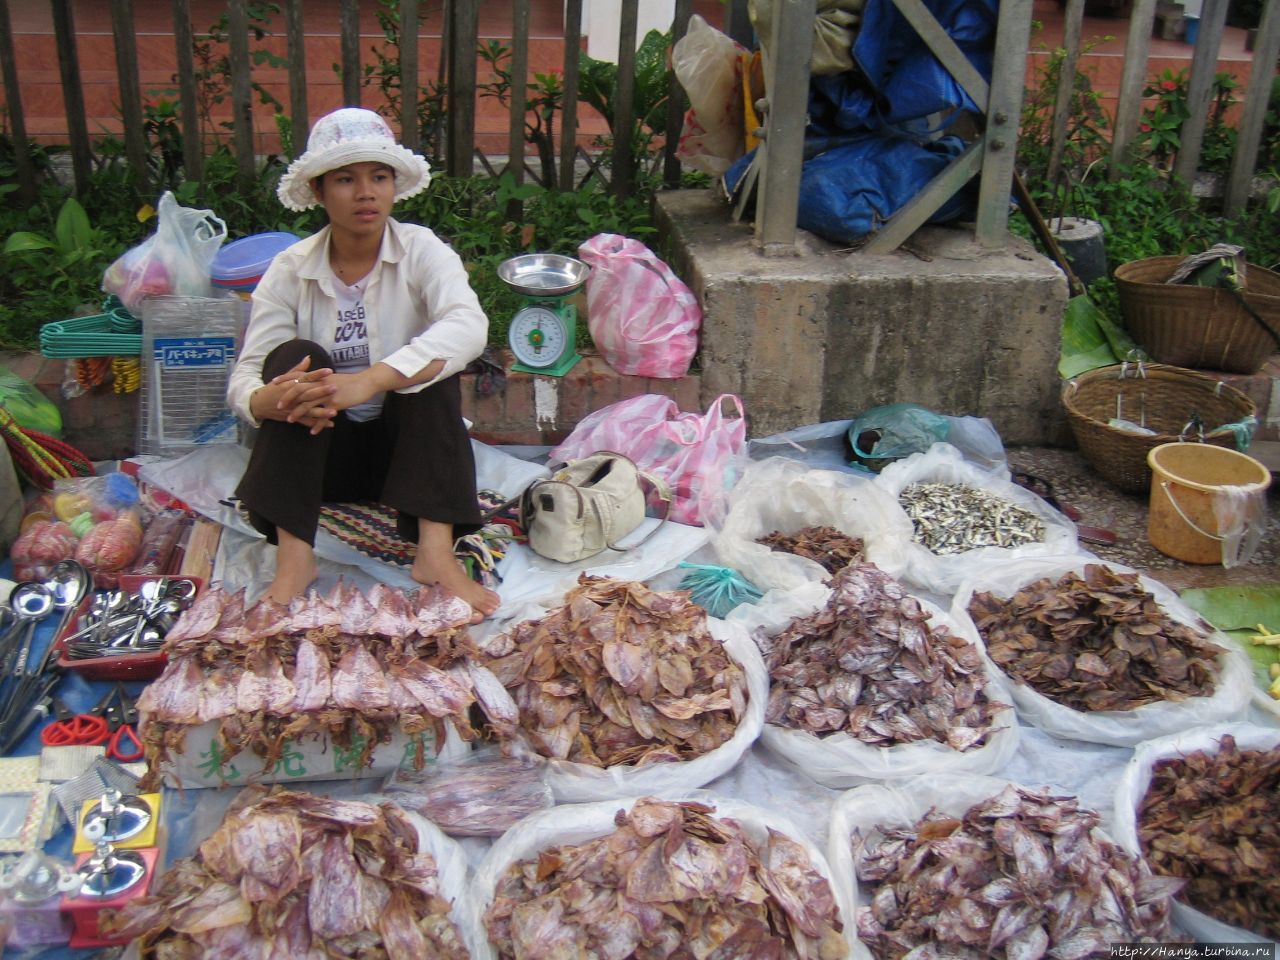 Утренний овощной рынок Луангпрабанга / Morning Market of Luangprabang